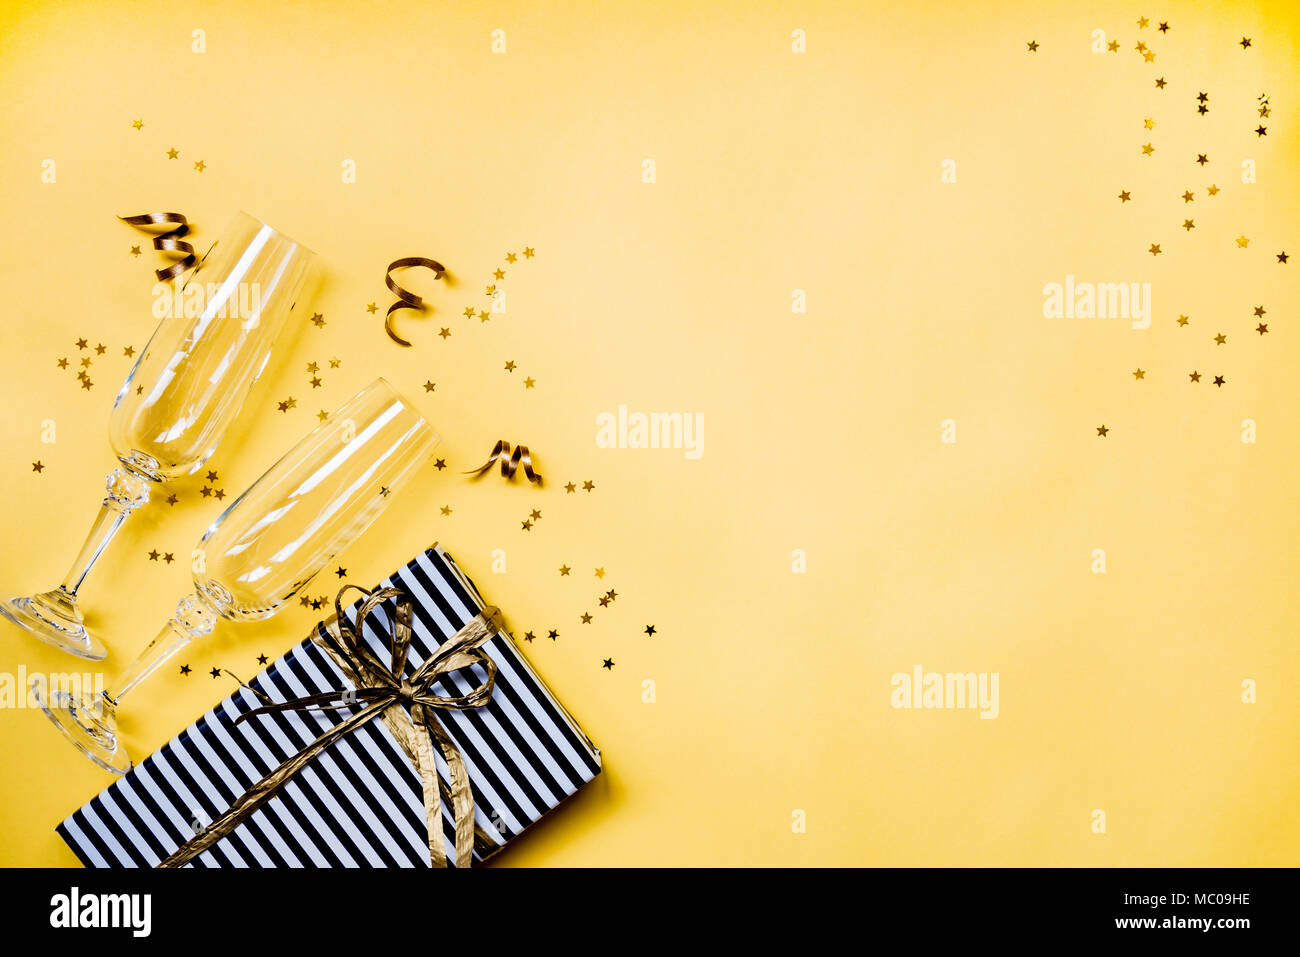 Célébration Contexte - Vue de dessus deux chrystal verres de champagne, une boîte cadeau enveloppé dans du papier rayé noir et blanc, des rubans et des étoiles d'or en forme de Banque D'Images